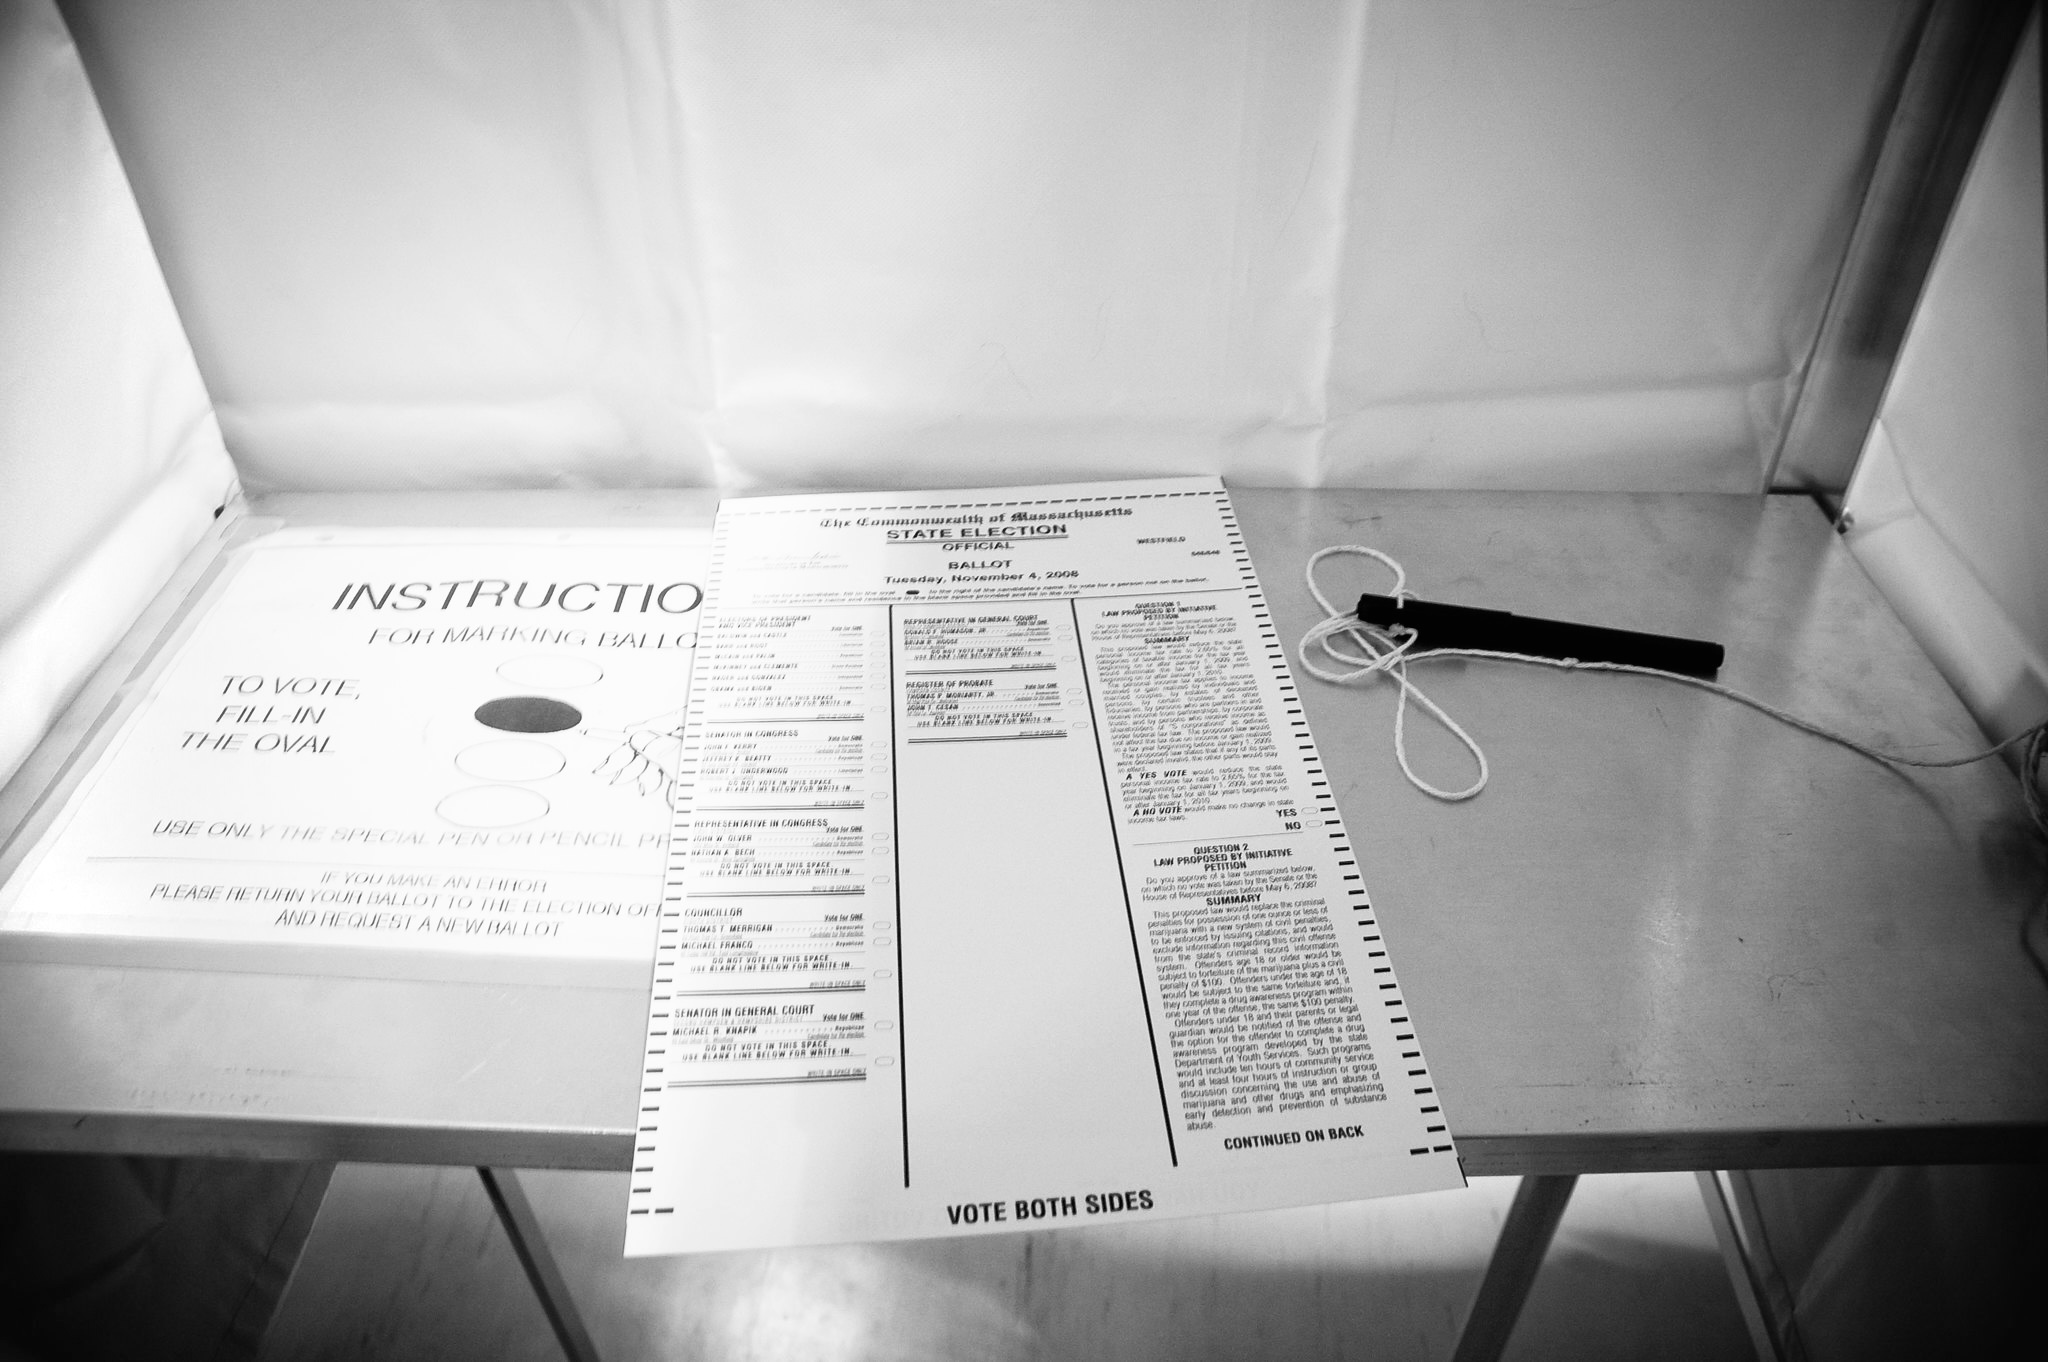 Democrats rig elections through dishonest ballot initiative wording